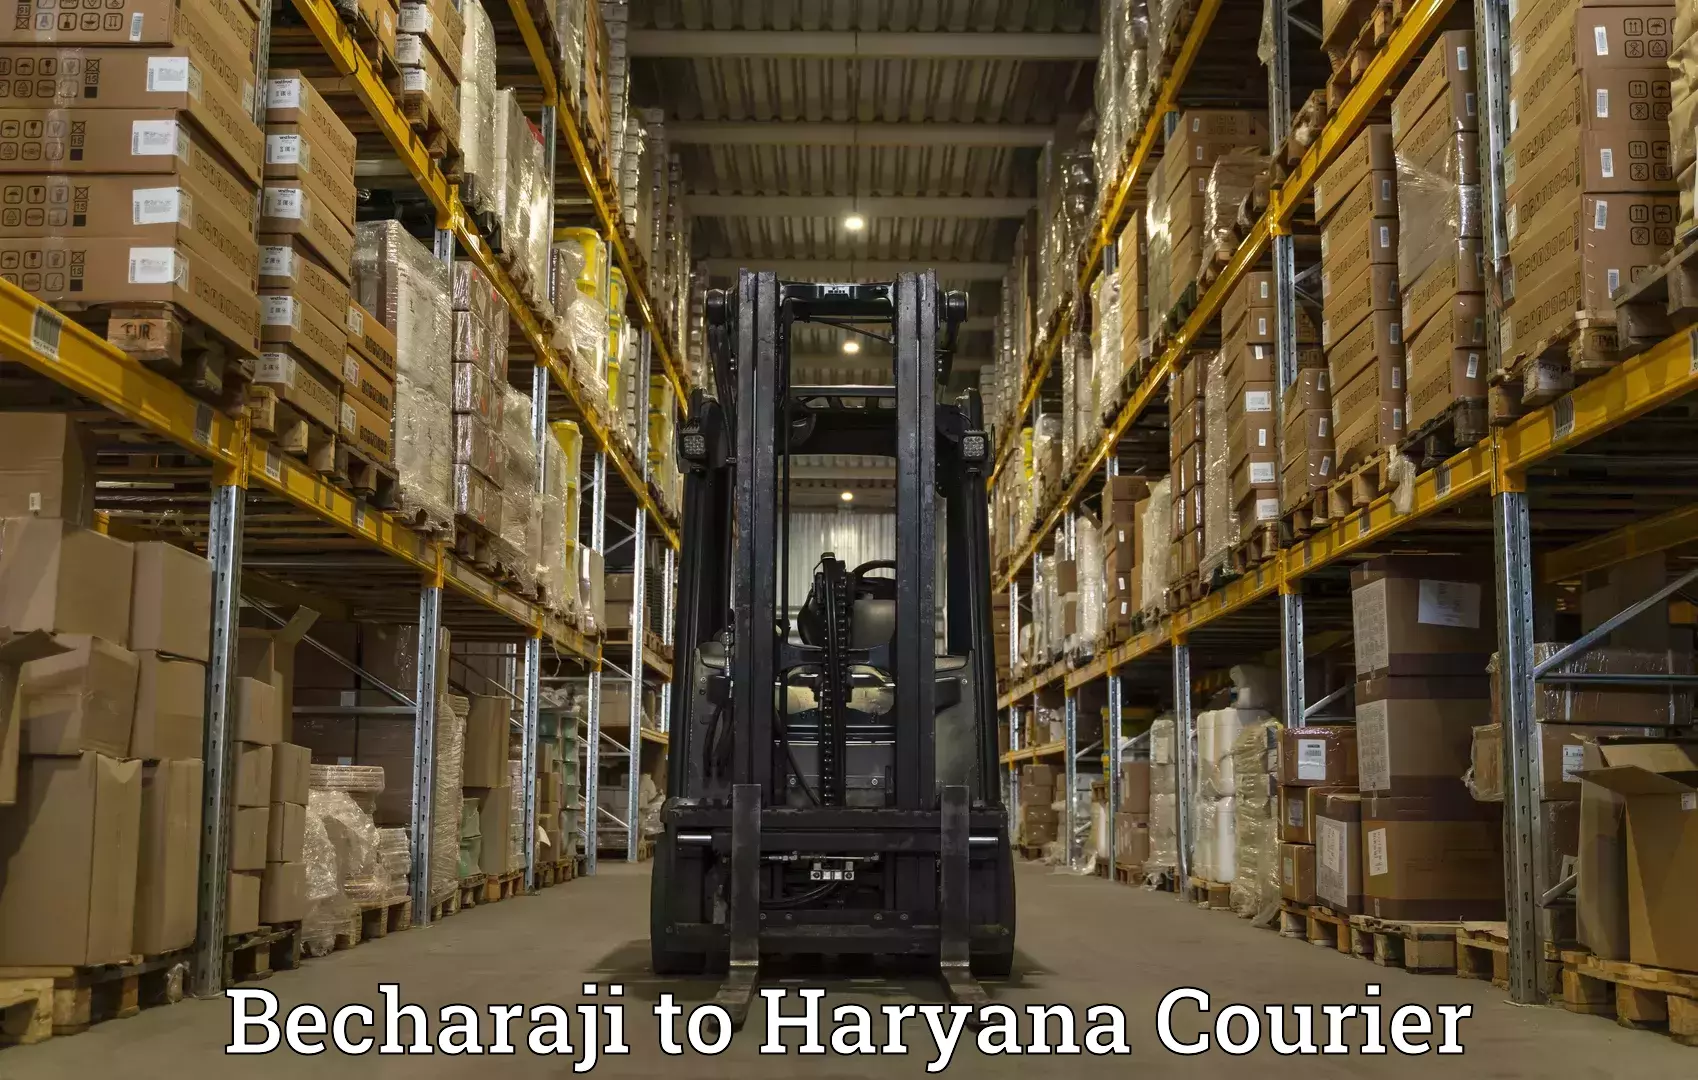 Automated shipping processes Becharaji to Chaudhary Charan Singh Haryana Agricultural University Hisar